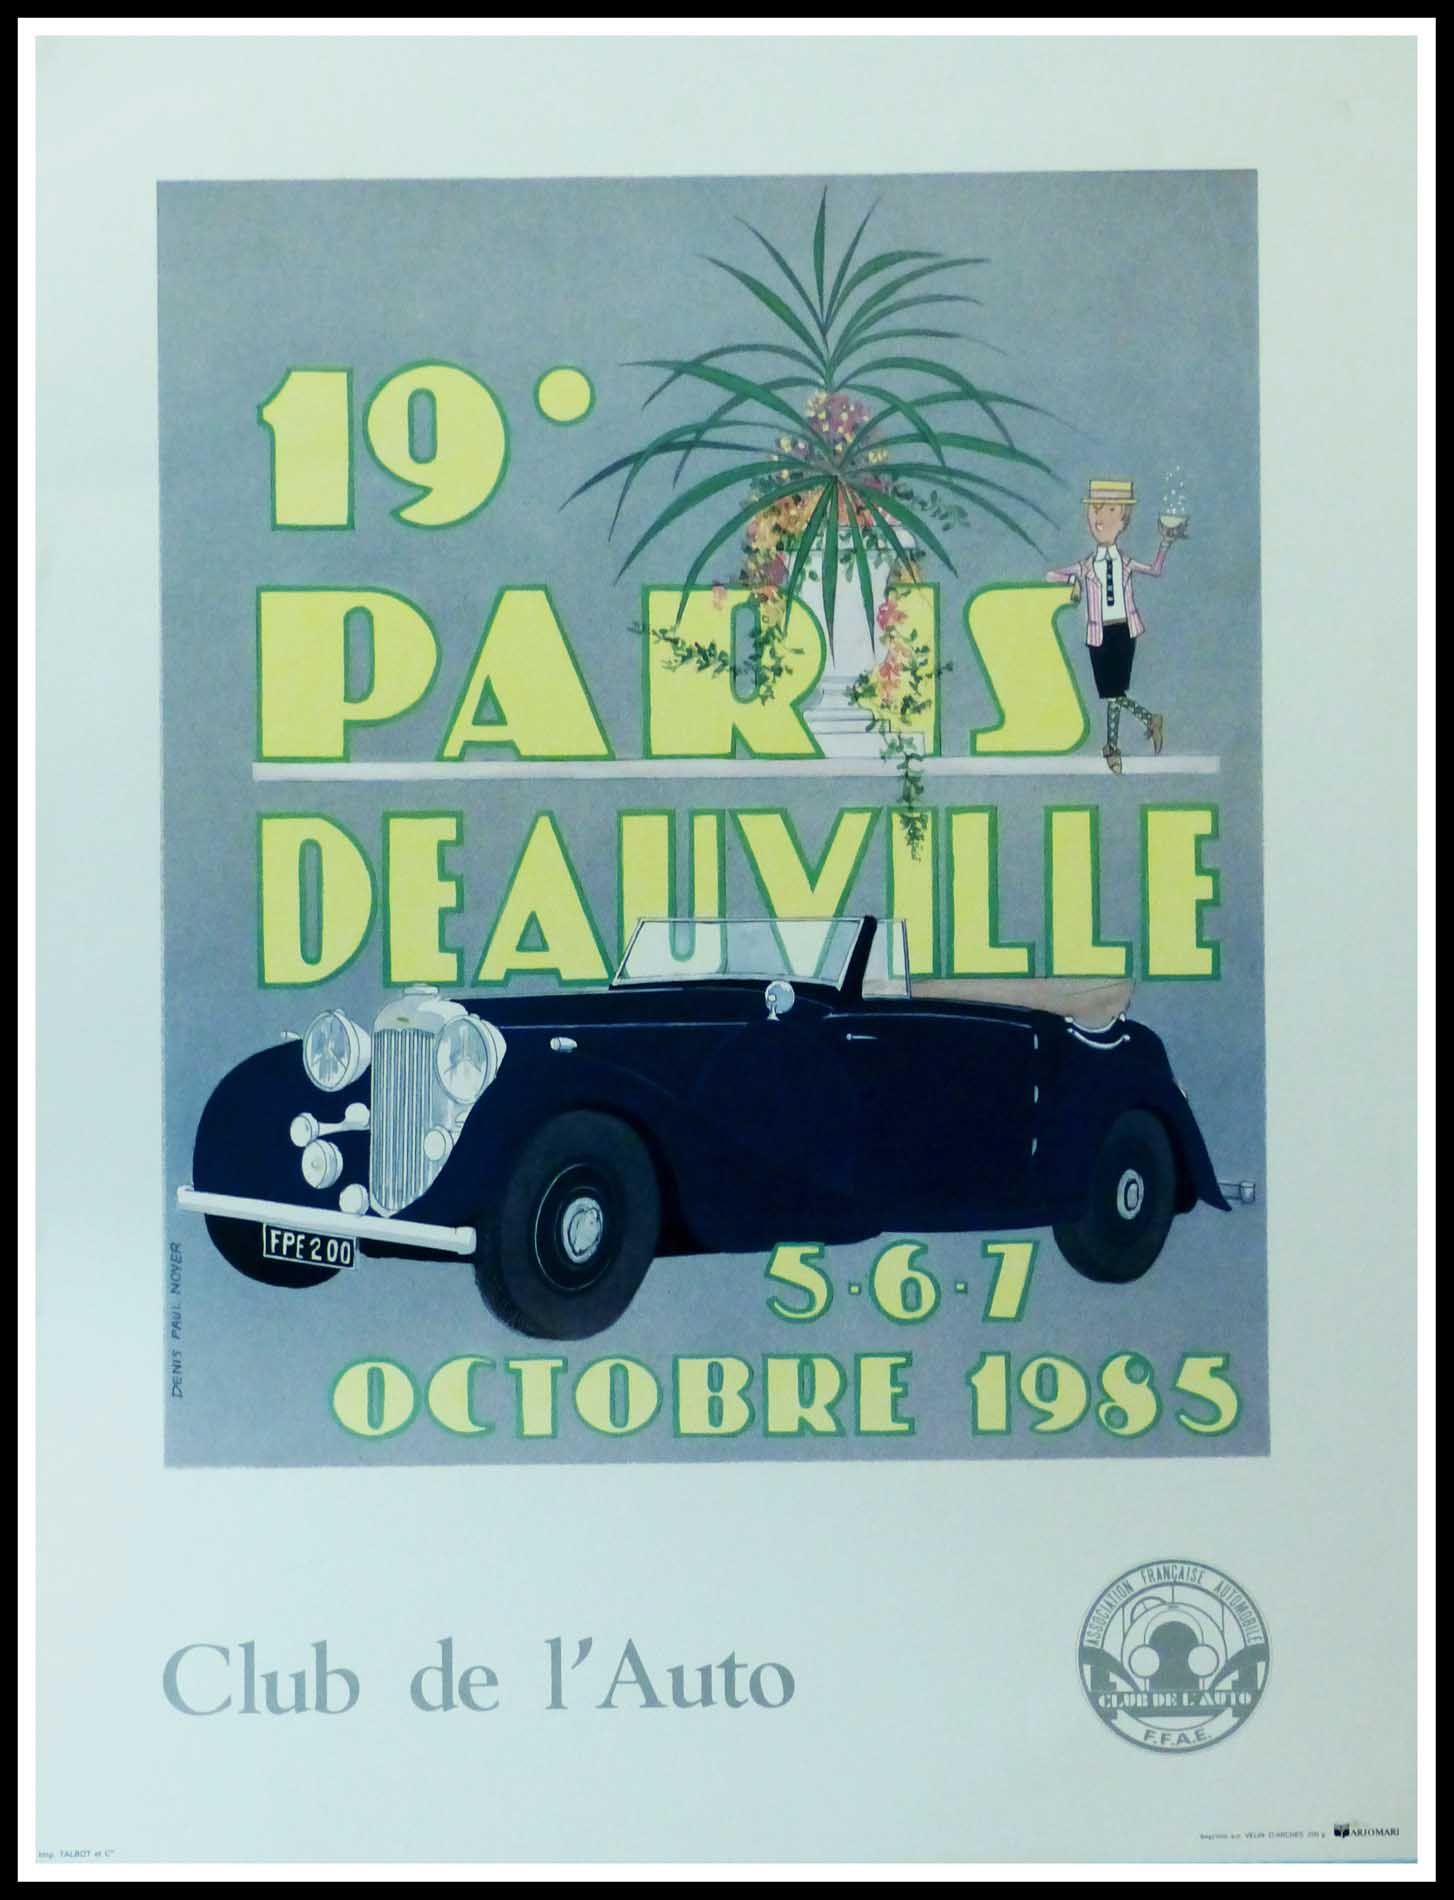 Denis-Paul Noyer 丹尼斯-保罗-诺耶（Denis-Paul NOYER）（1940-）。

第十九届巴黎多维尔拉力赛，1985

原创帆布海报
&hellip;